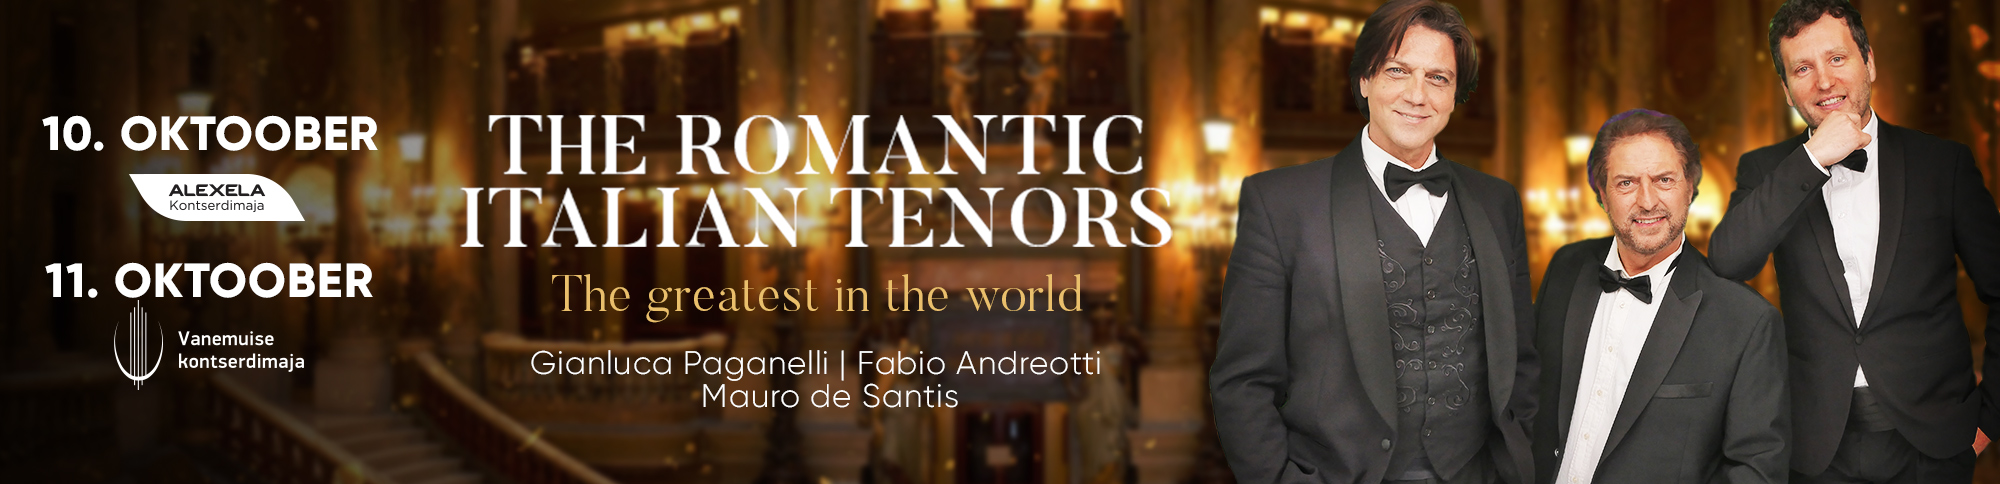 The Romantic Italian Tenors 